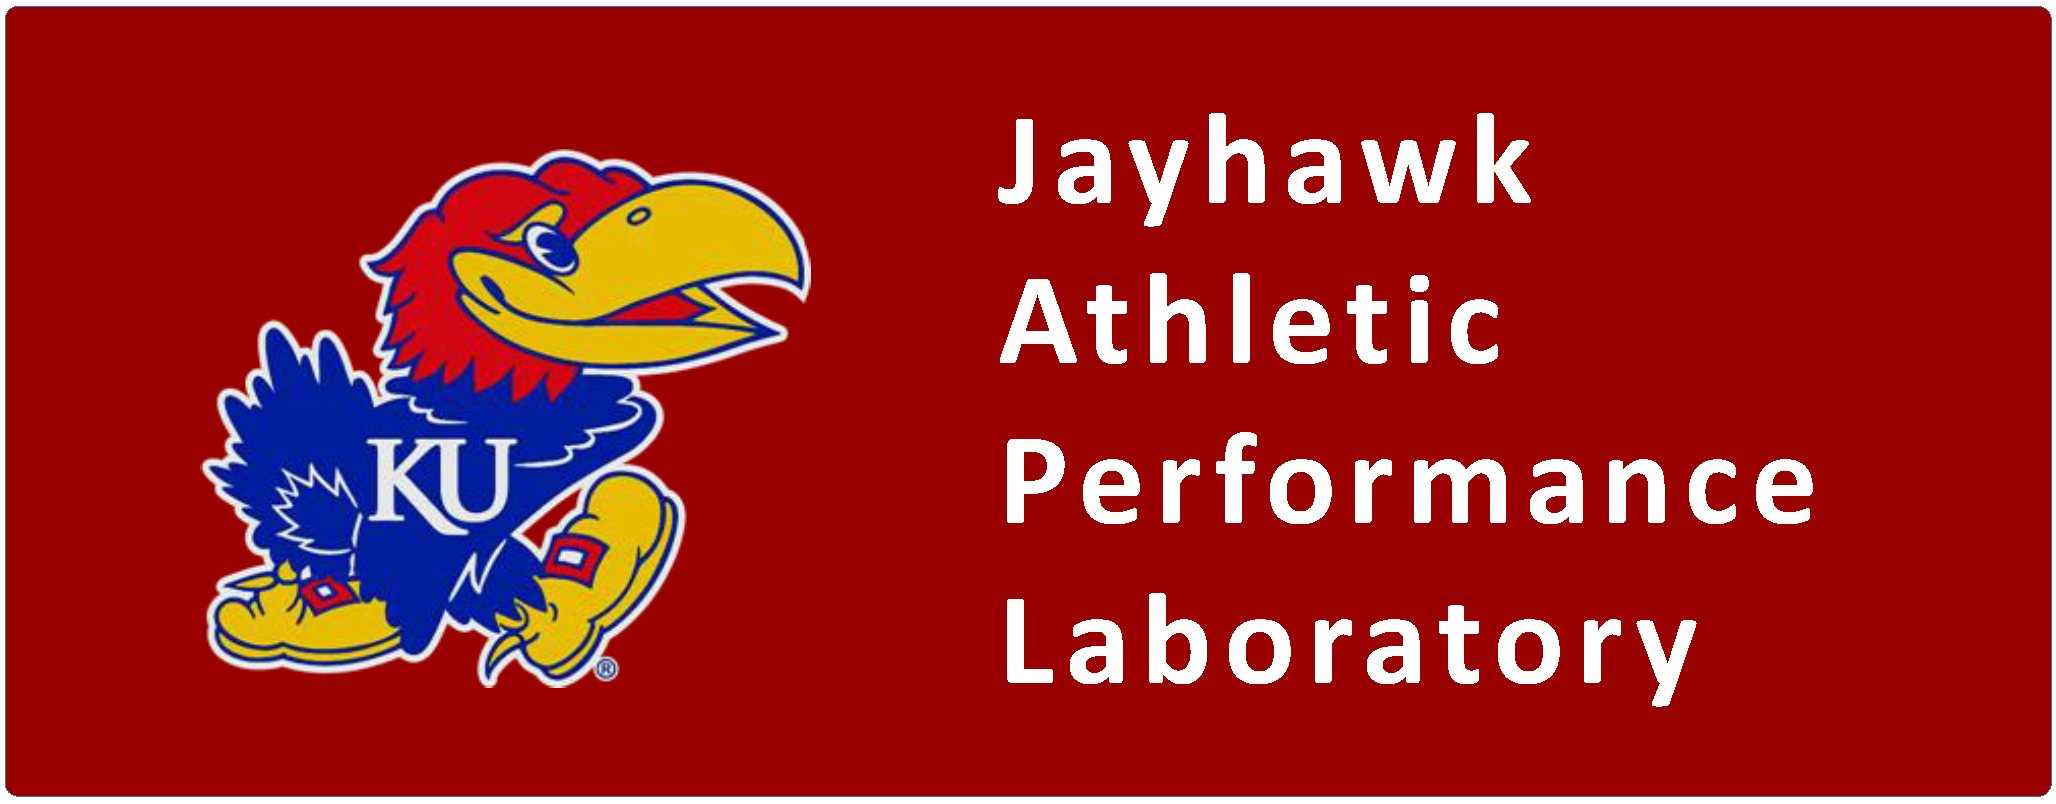 Jayhawk Athletic Performance Laboratory logo - KU Jayhawk left aligned